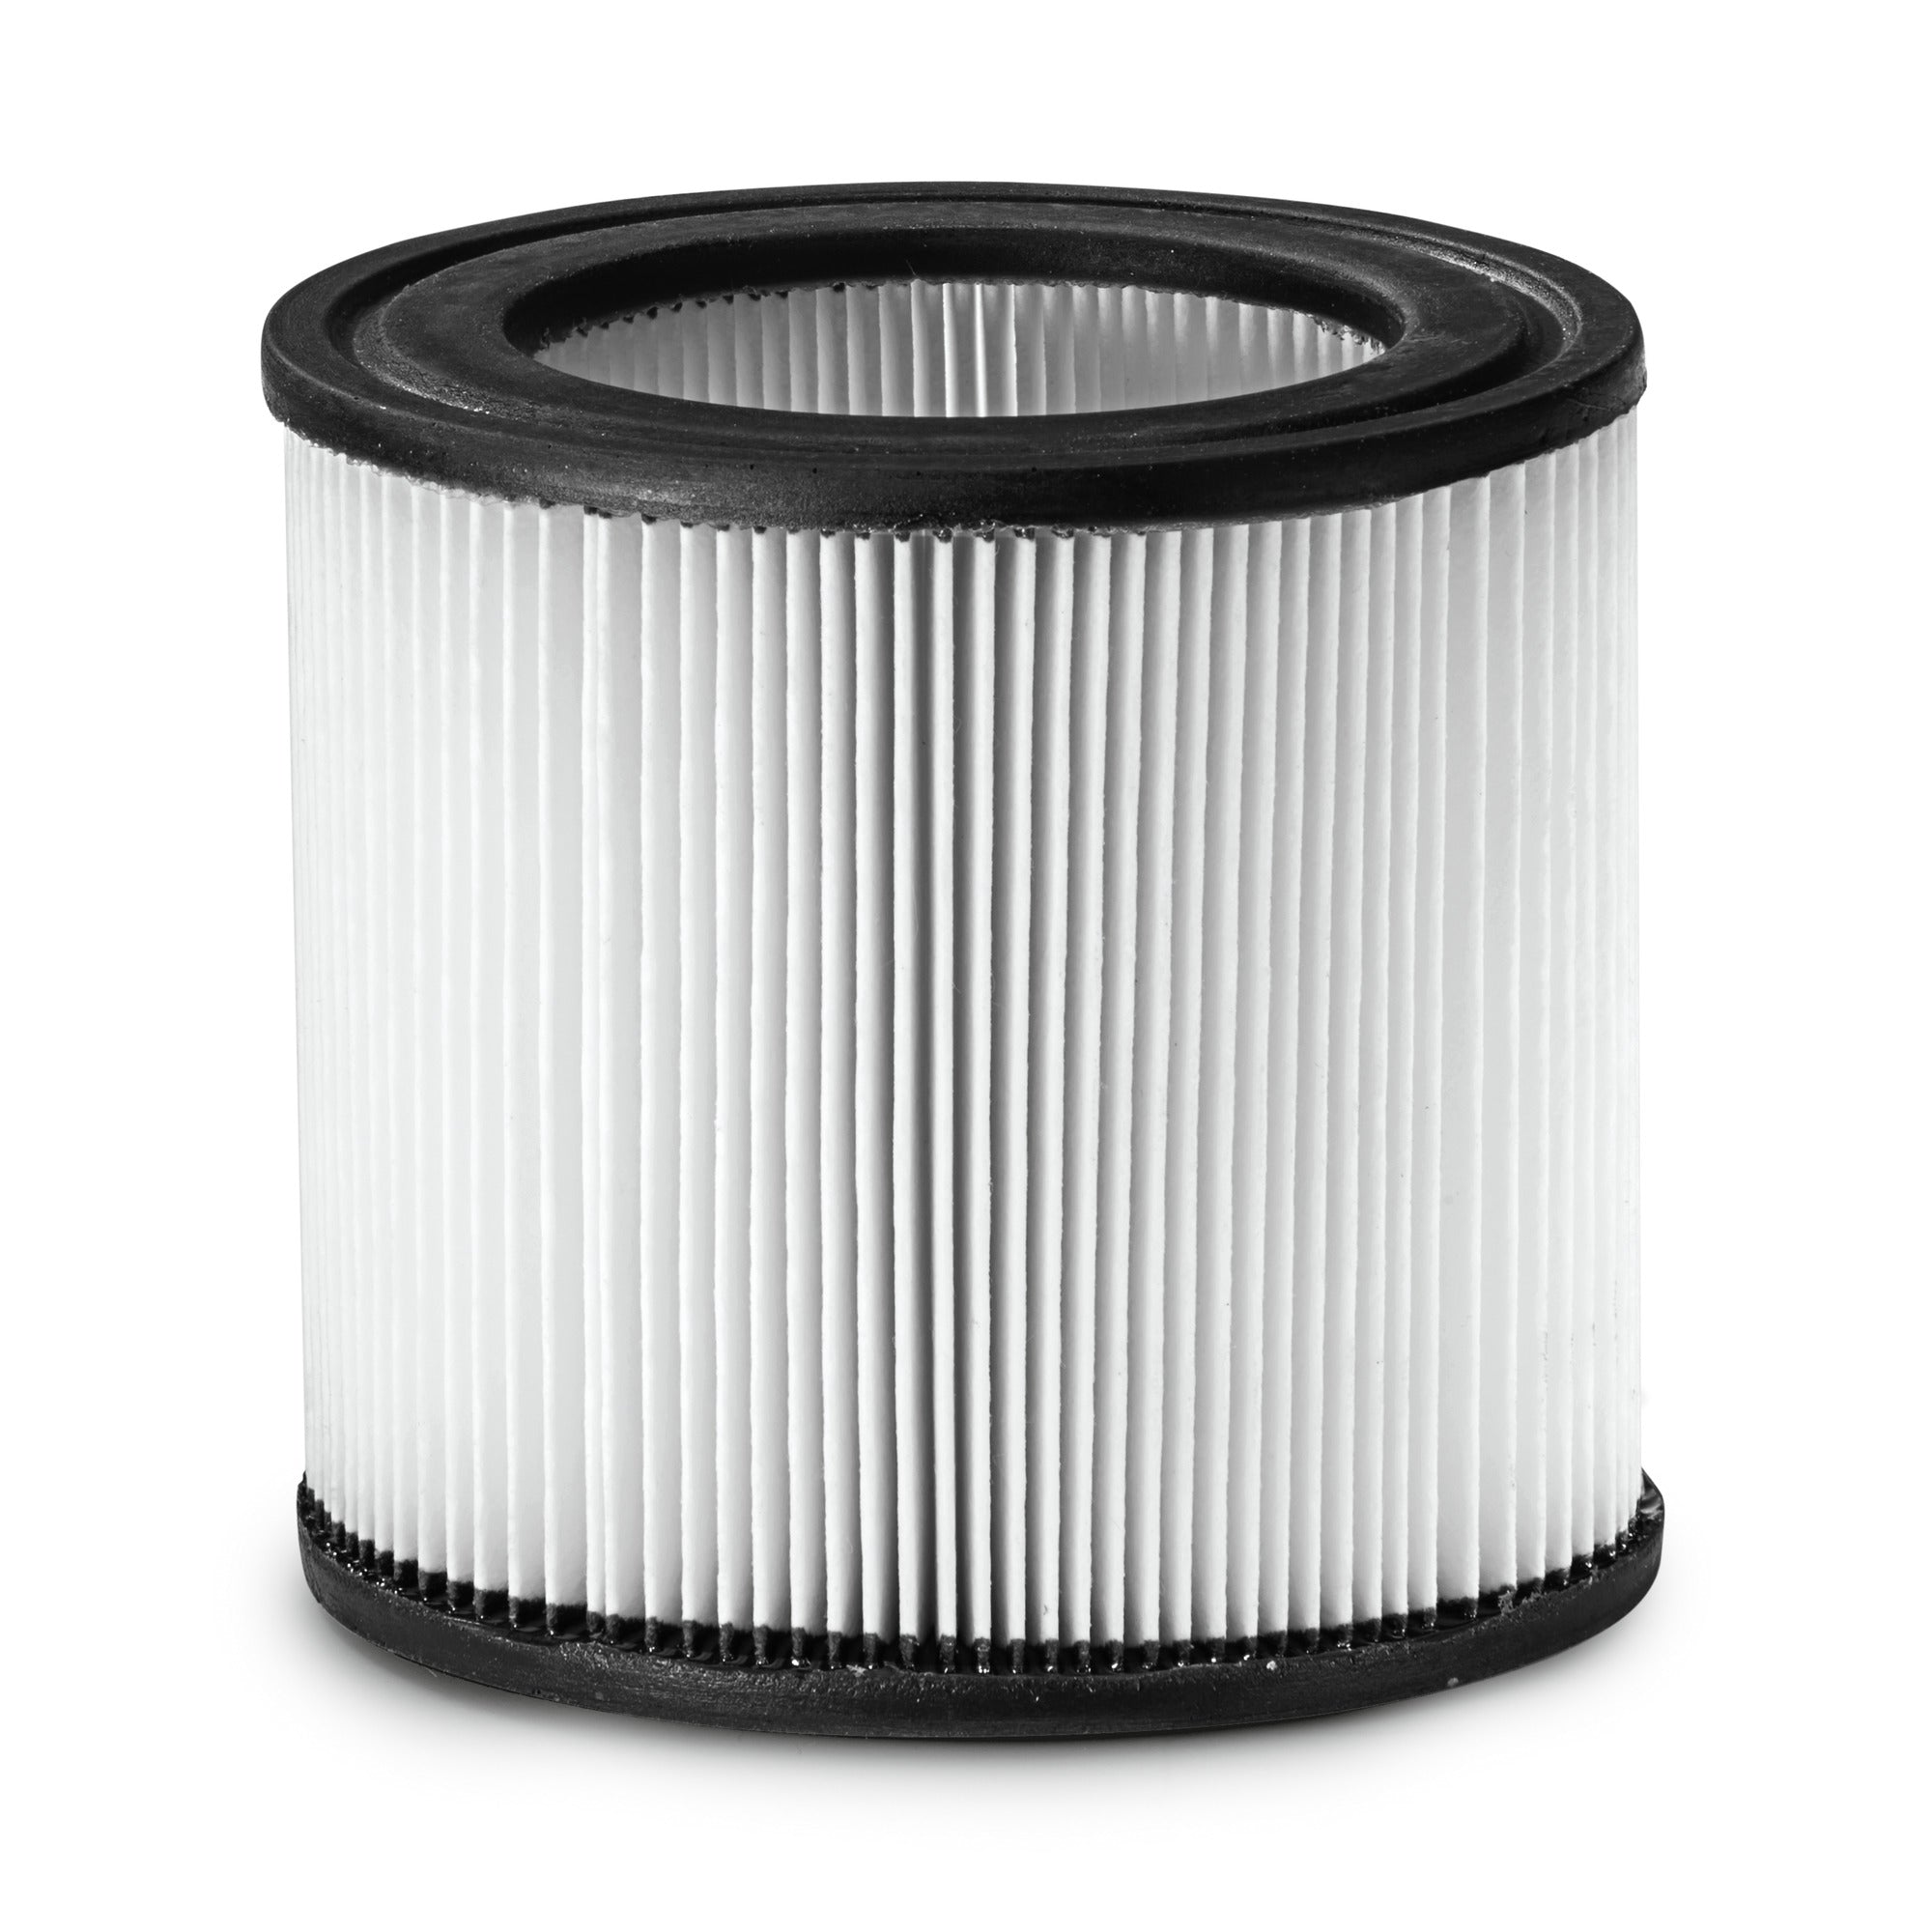 Karcher PES cartridge filter